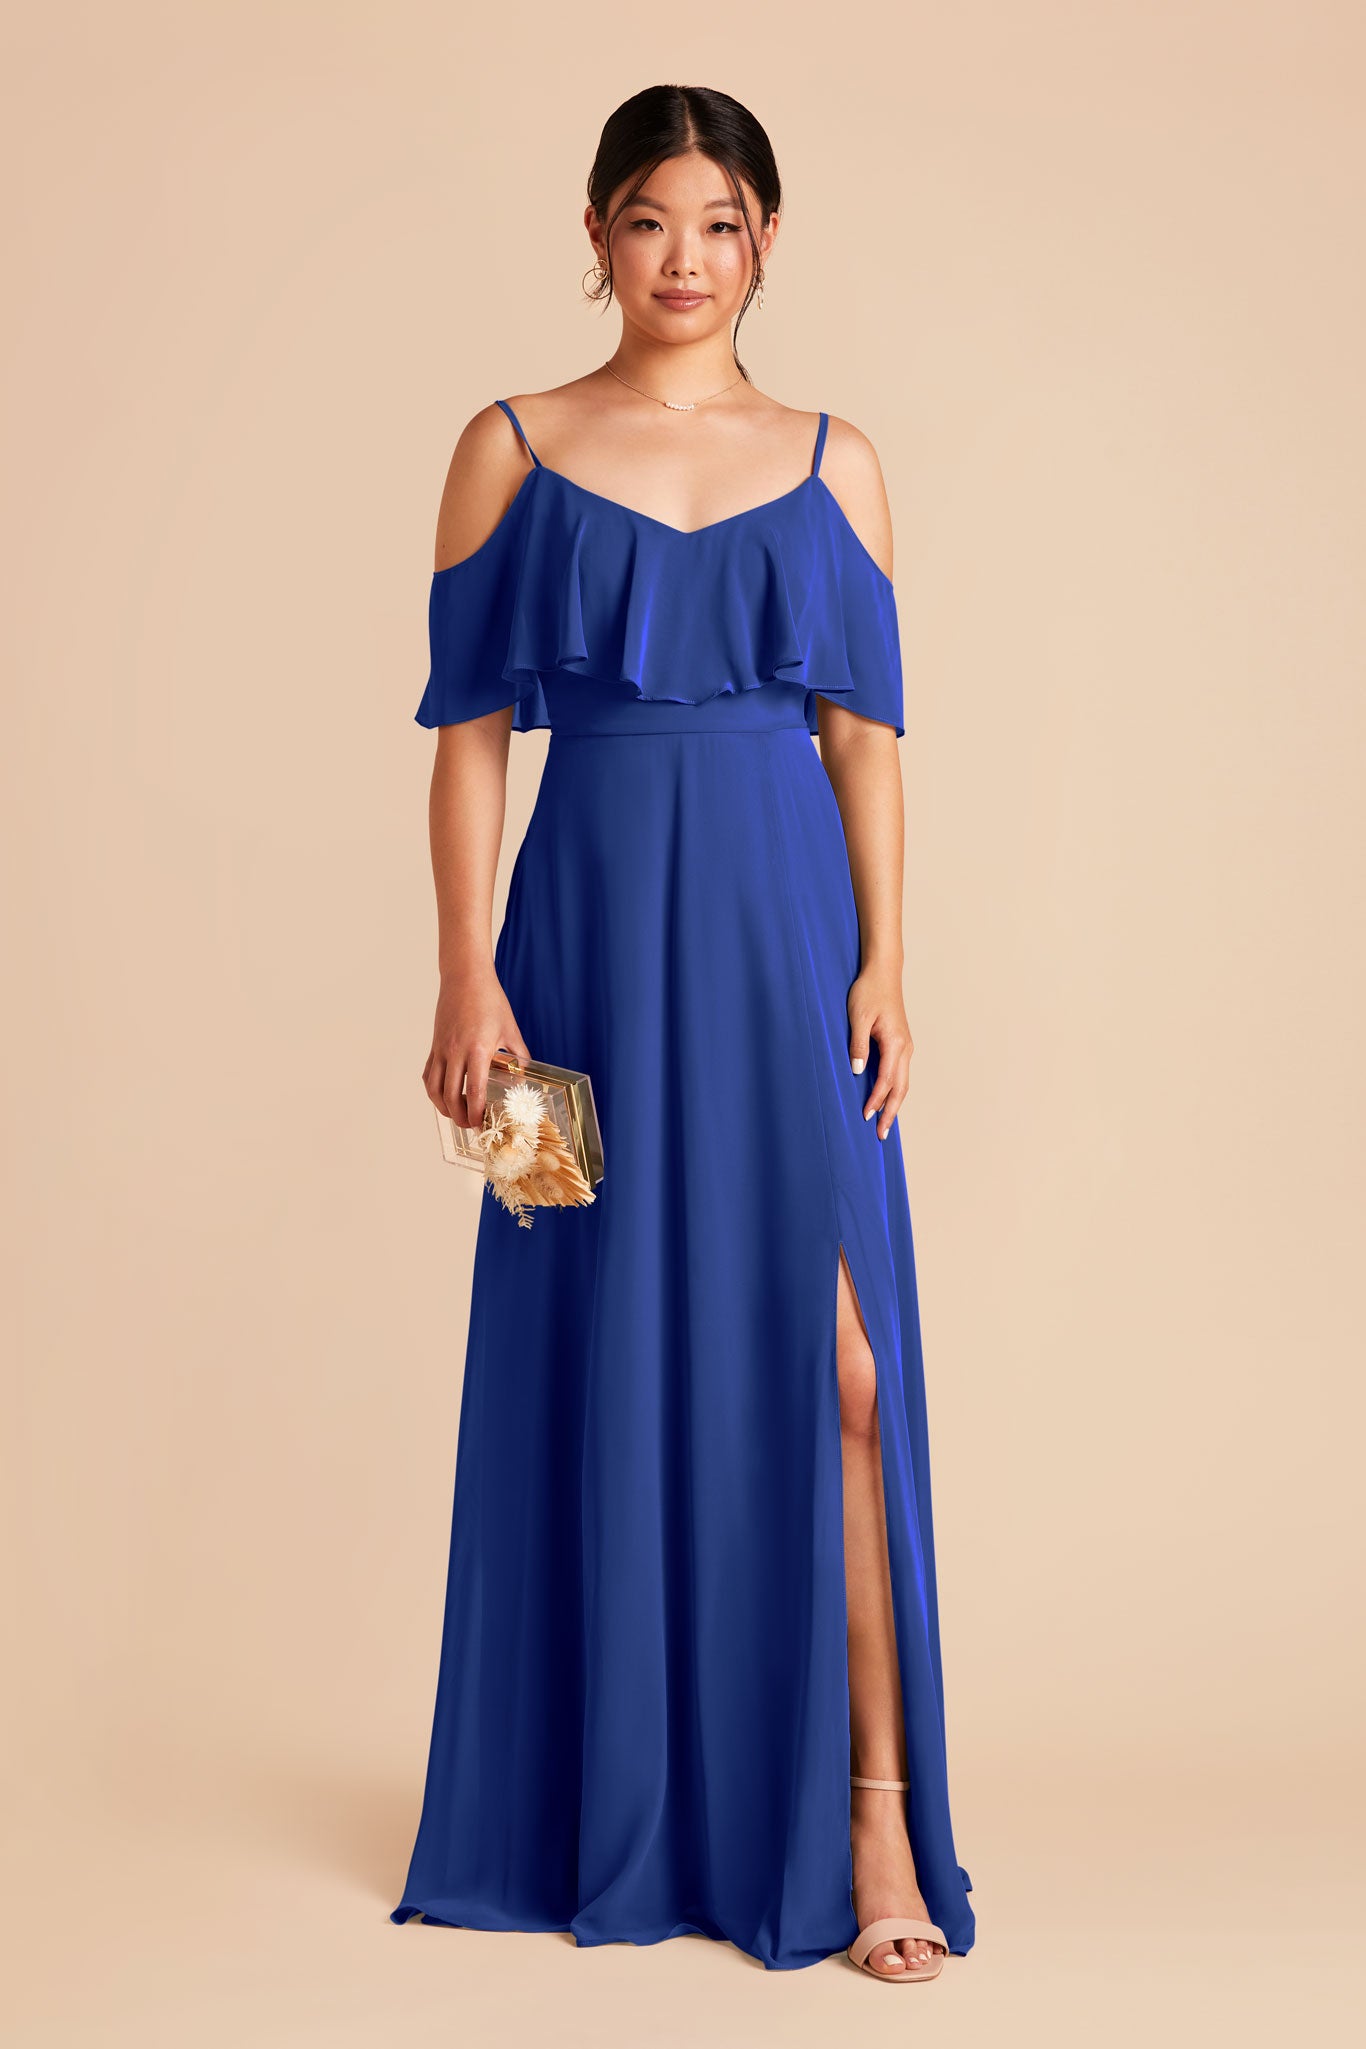 Cobalt Blue Jane Convertible Dress by Birdy Grey